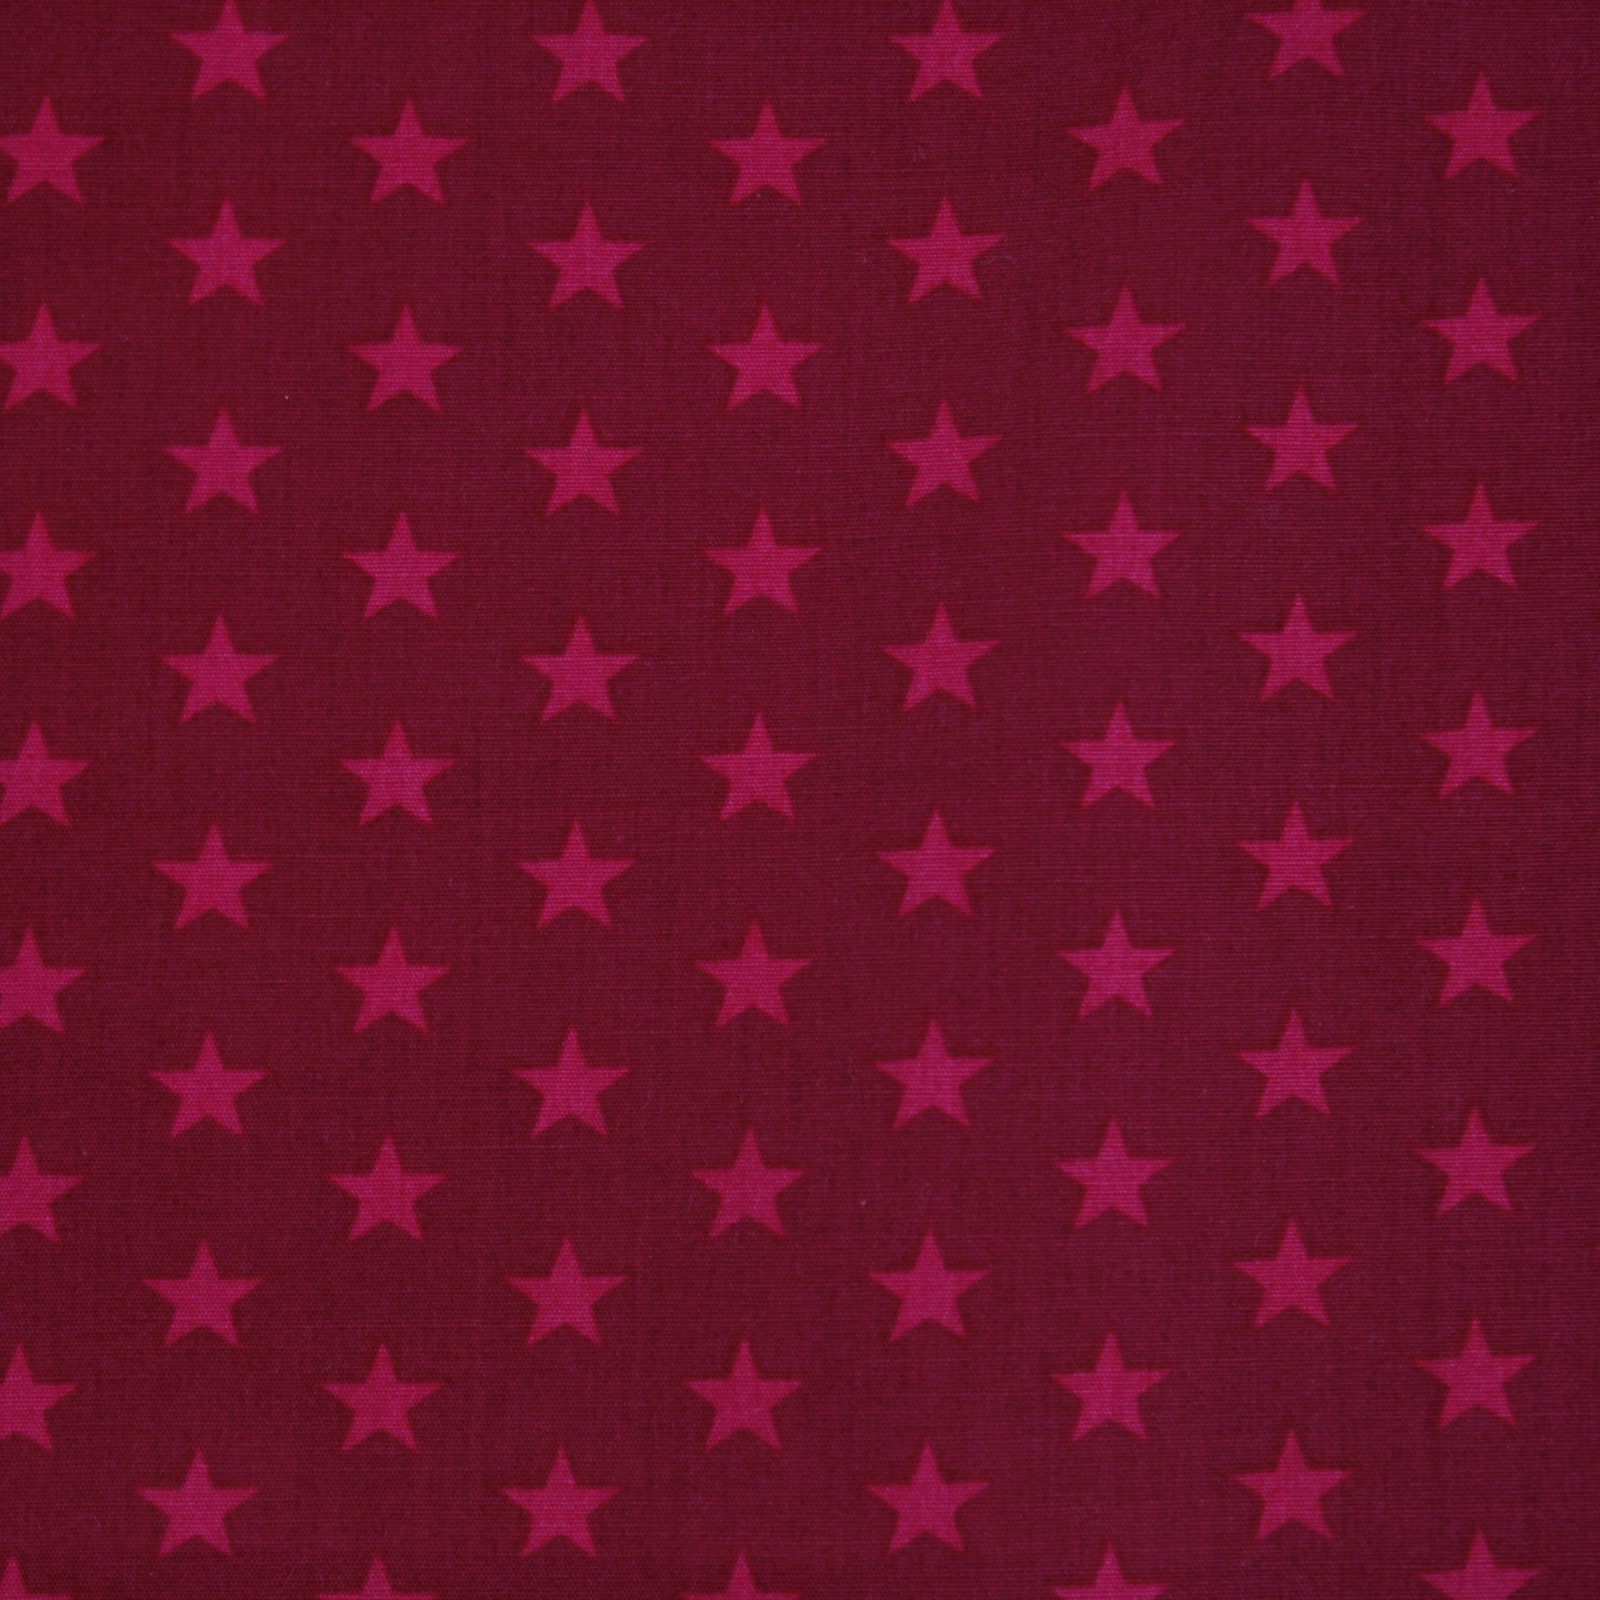 Kissenbezug Sterne Pink auf Bordeaux 40x40 cm